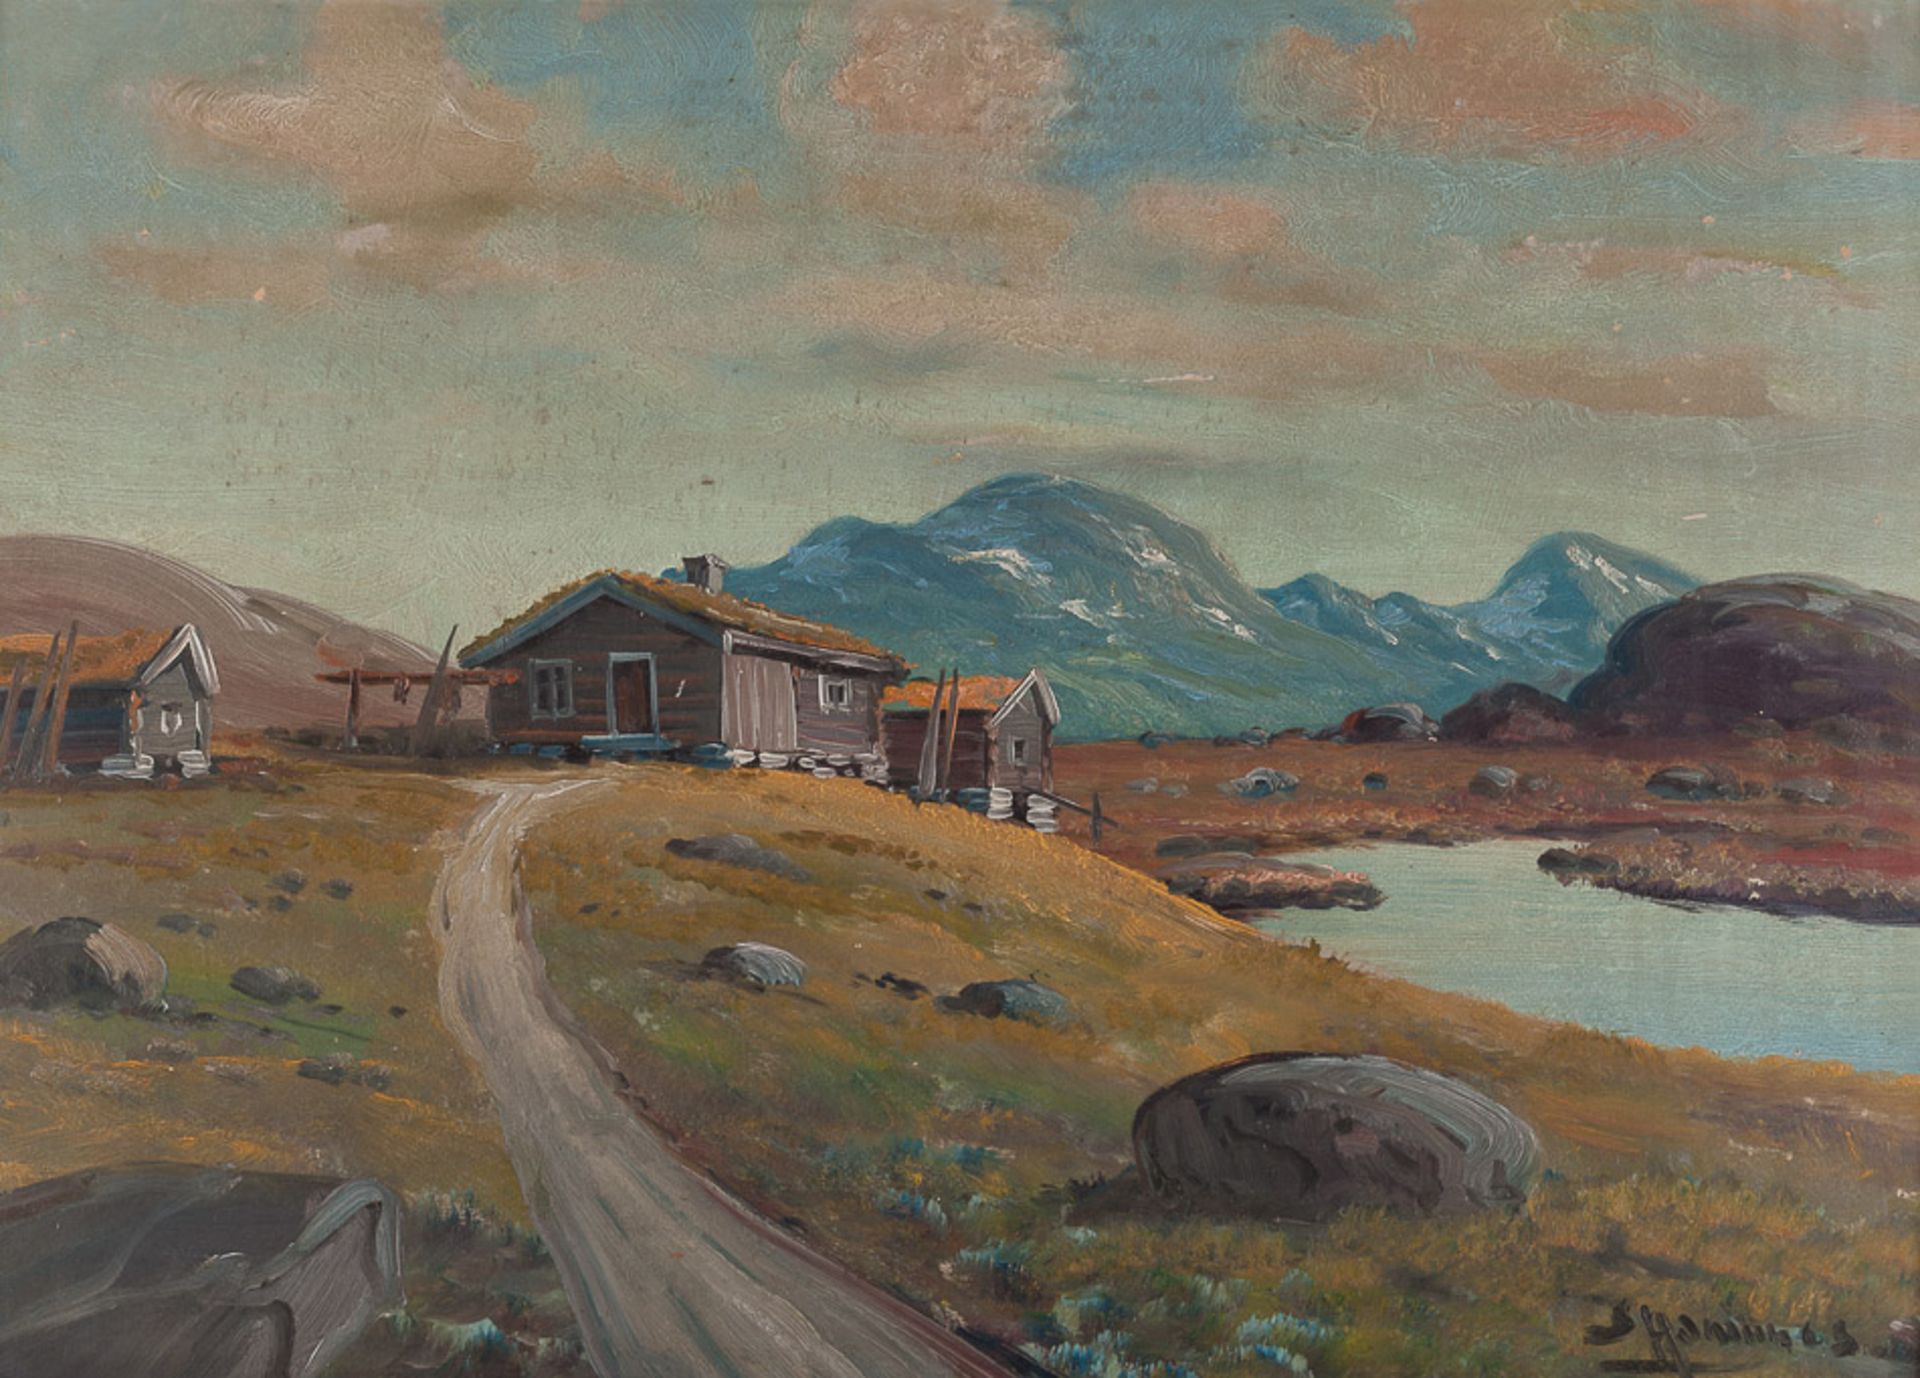 Künstler des 20. Jhd."Voralpenlandschaft"
Gemälde Öl/Hartfaser, 50 cm x 69 cm, gerahmt,
rechts unten